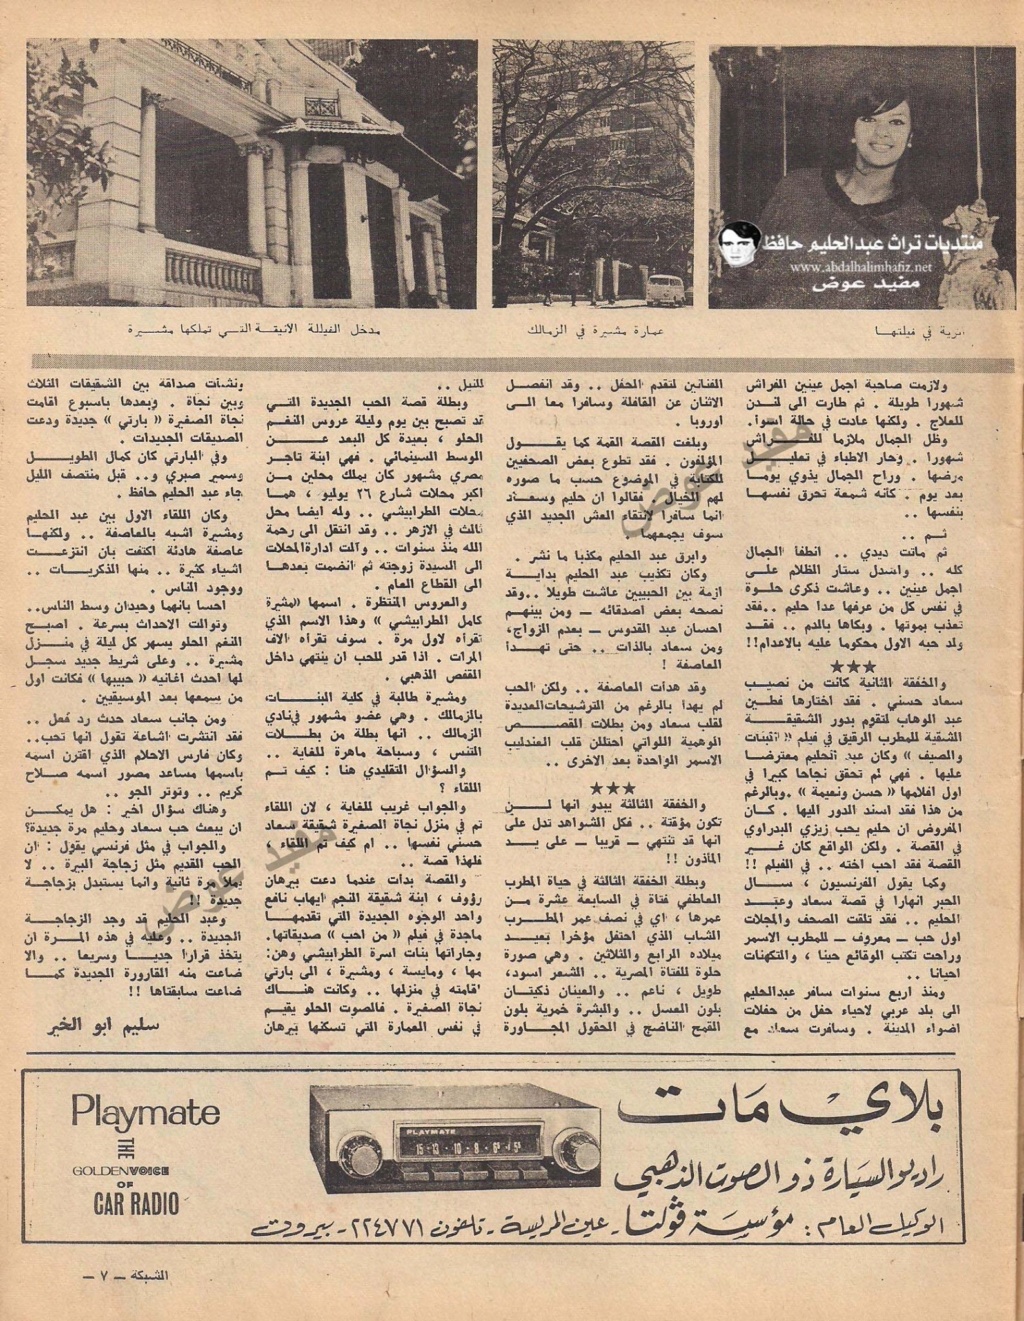 مقال صحفي : مشيرة الطرابيشي تطرد سعاد حسني من قلب عبدالحليم حافظ 1966 م 486